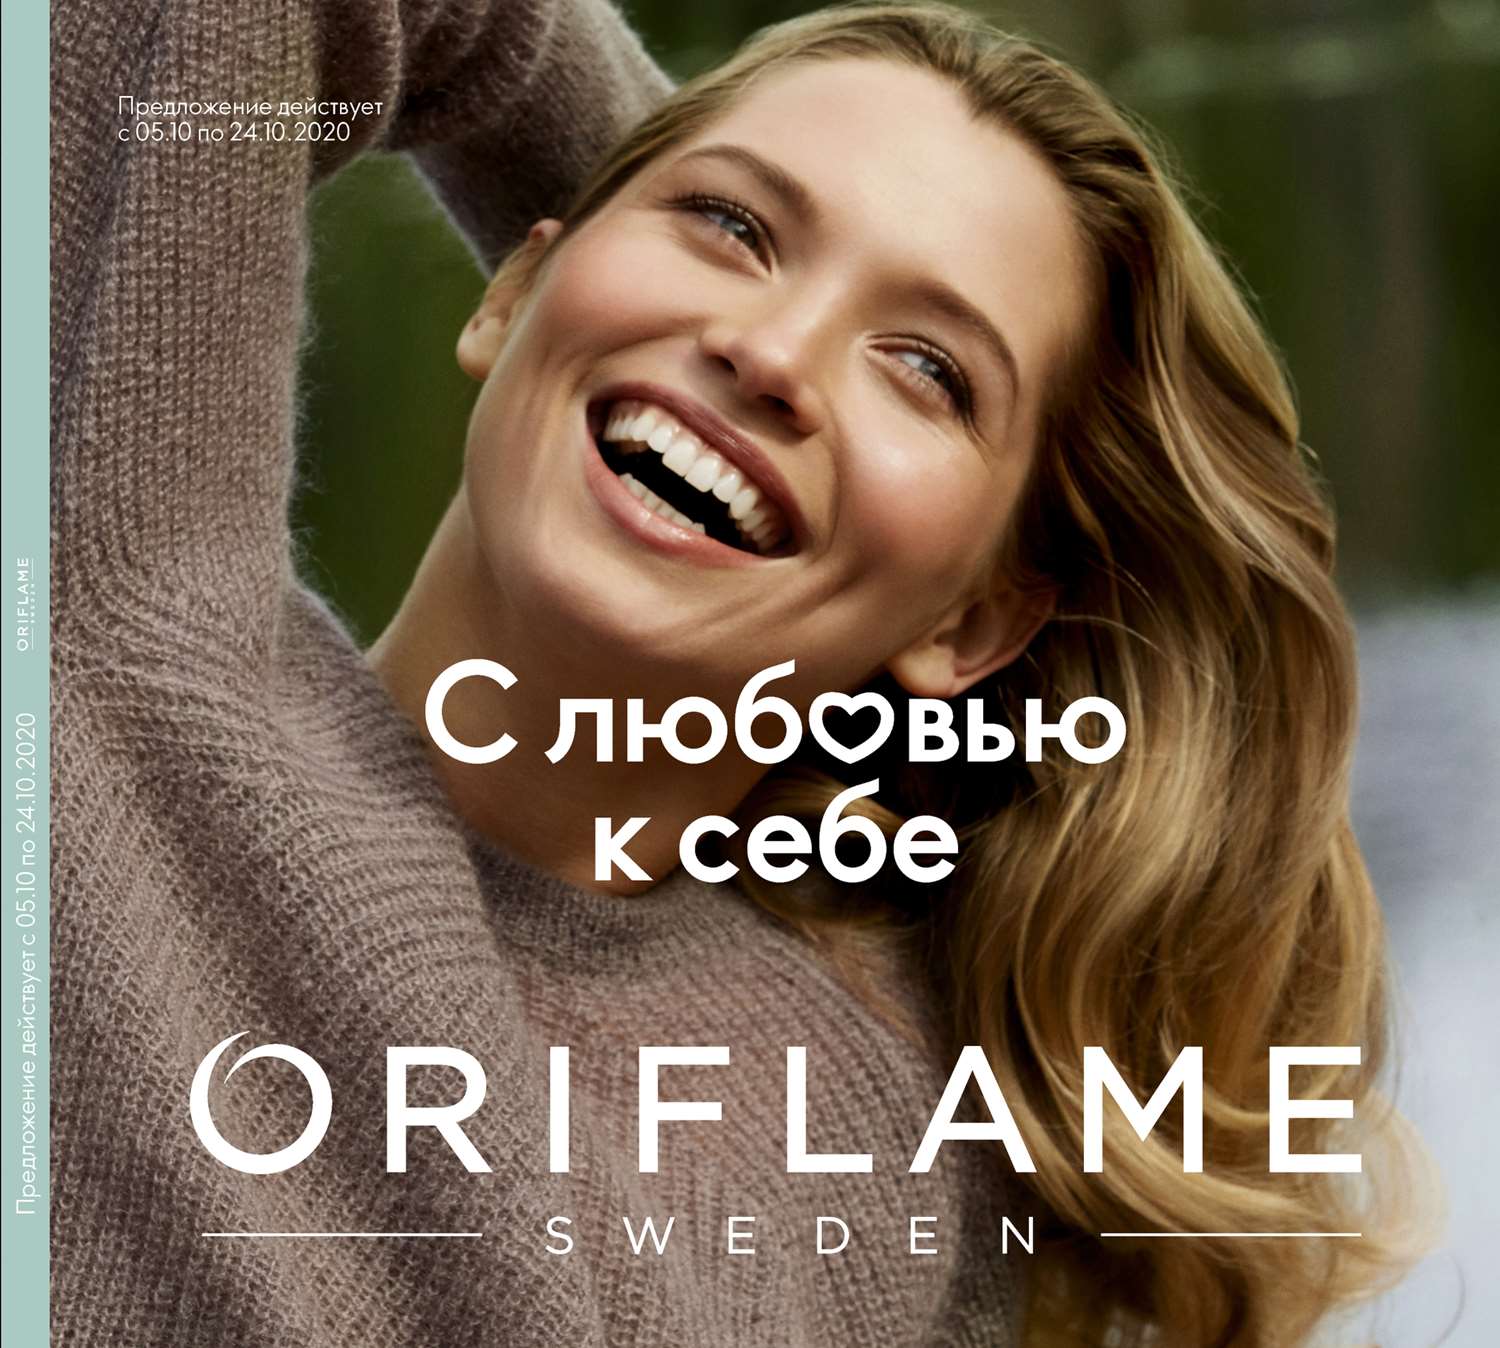 Продукты Oriflame со скидкой 20% от цены каталога - фотография